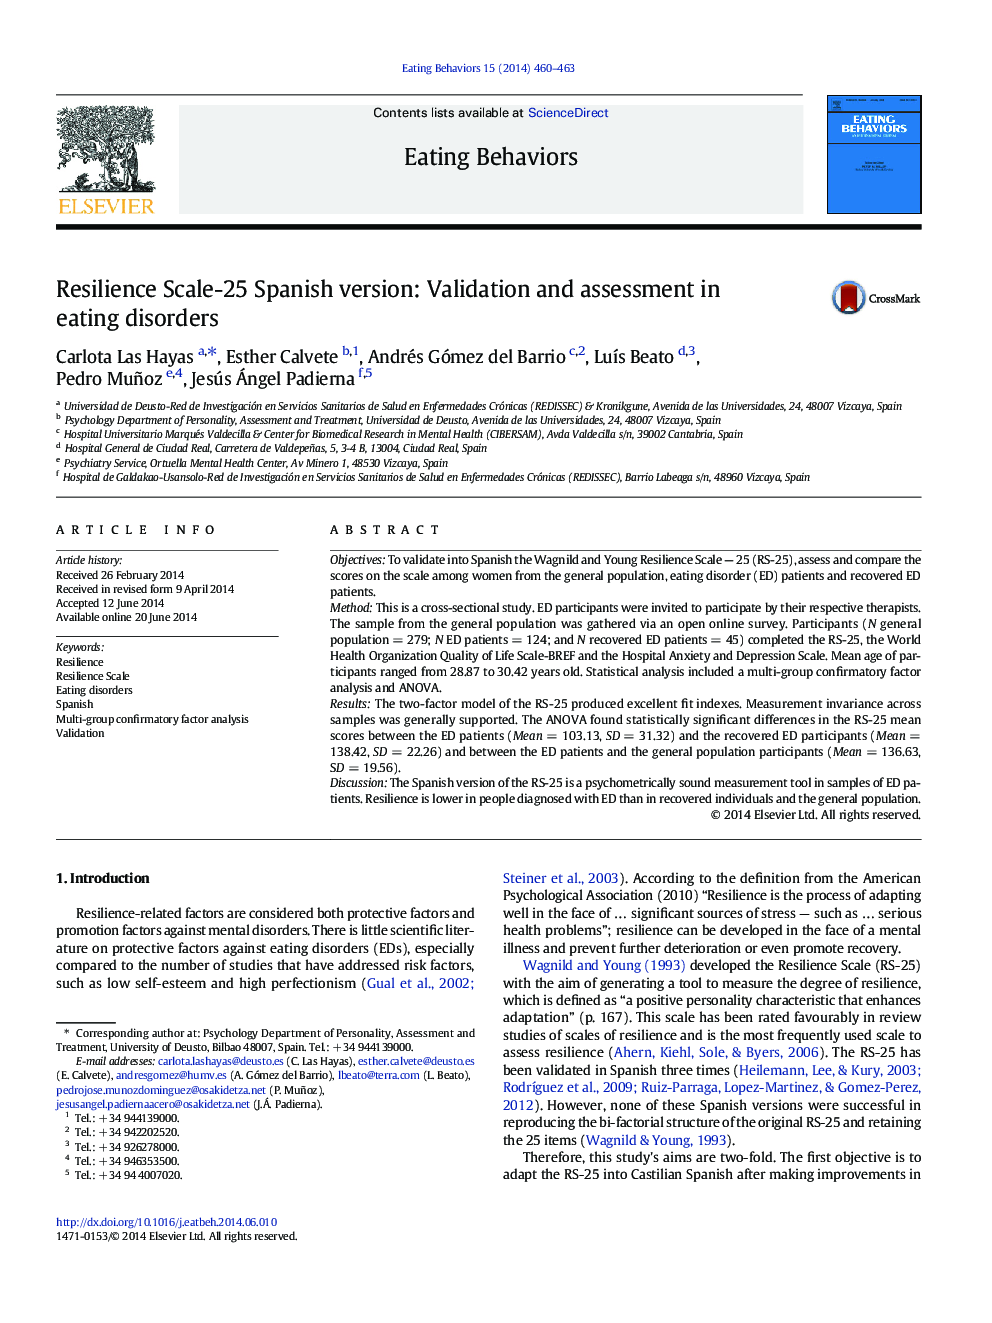 مقیاس انعطاف پذیری -25 نسخه اسپانیایی: اعتبار سنجی و ارزیابی در اختلالات خوردن 